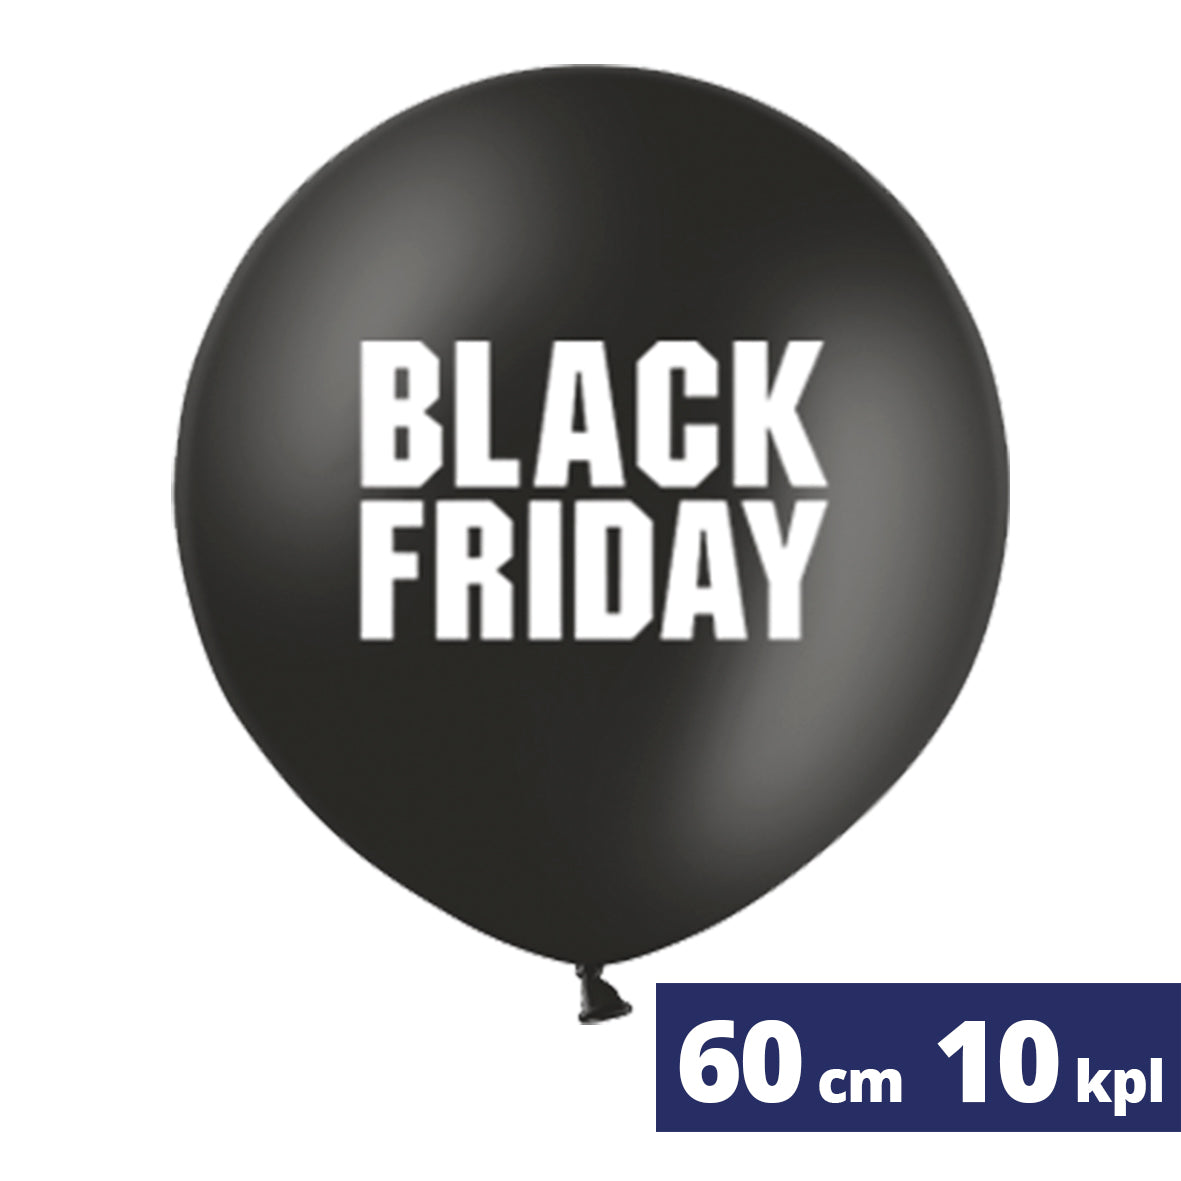 10 kpl 60 cm Black Friday jättipalloa täytettynä ja toimitettuna